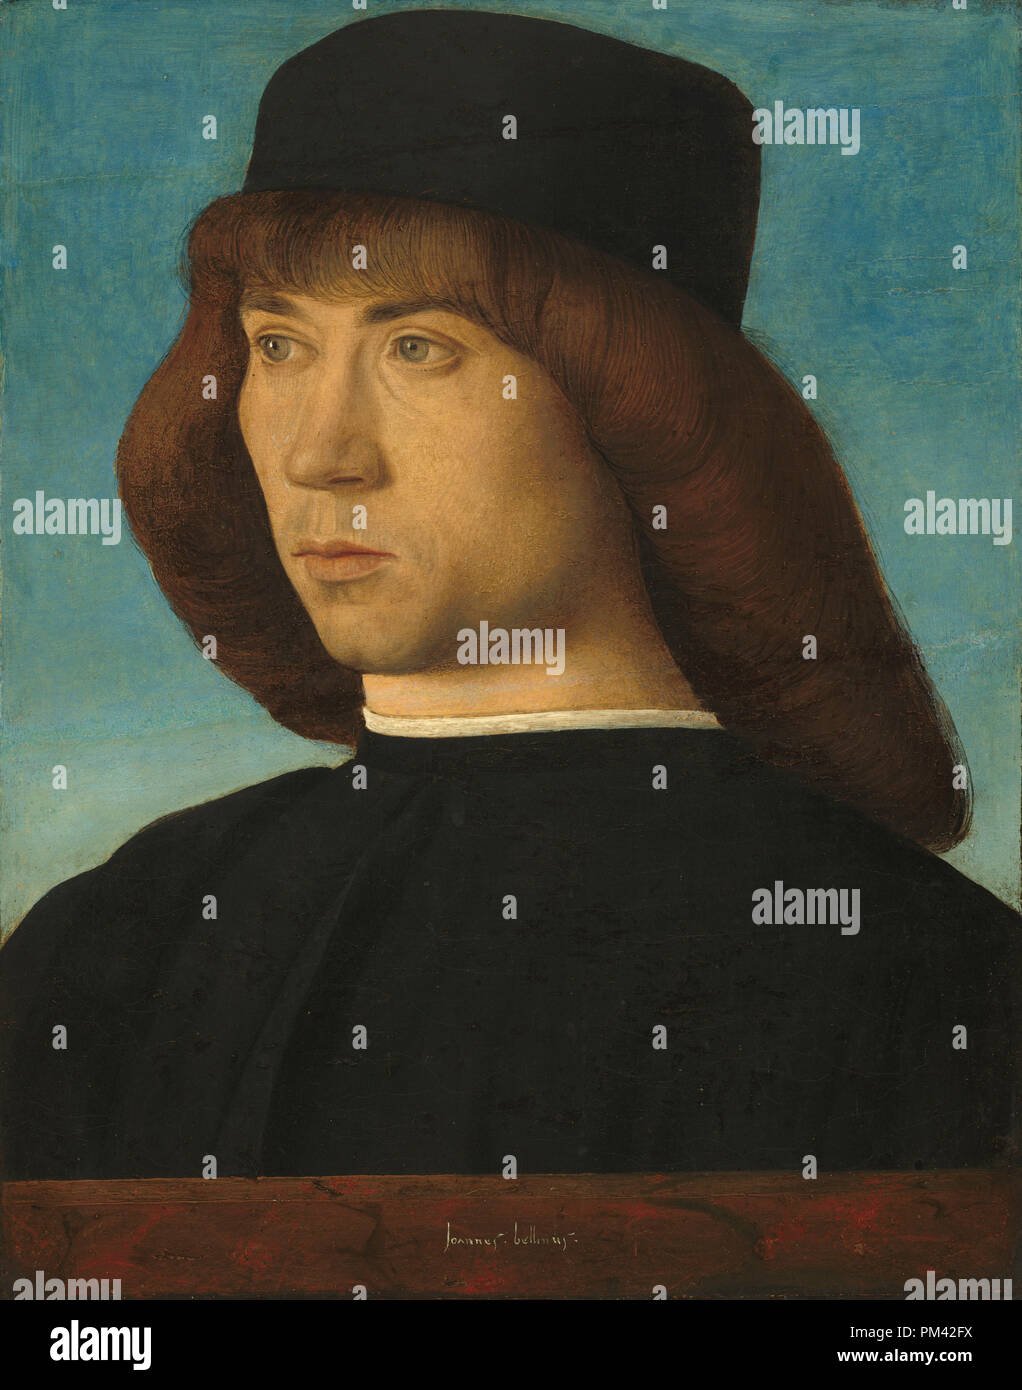 Portrait d'un jeune homme. En date du : ch. 1490. Dimensions : surface peinte : 30 x 23 cm (11 13/16 x 9 1/16 in.) original : panneau 30,9 x 24,8 cm (12 3/16 x 9 3/4 in.) dans l'ensemble (avec les bandes du bois ajouté en 1944) : 32,9 x 27,1 cm (12 15/16 x 10 11/16 po.) : 55,56 x 53,98 encadré x 6,19 cm (21 7/8 x 21 1/4 x 2 7/16 in.). Médium : Huile sur panneau de peuplier. Musée : National Gallery of Art, Washington DC. Auteur : Giovanni Bellini. Banque D'Images